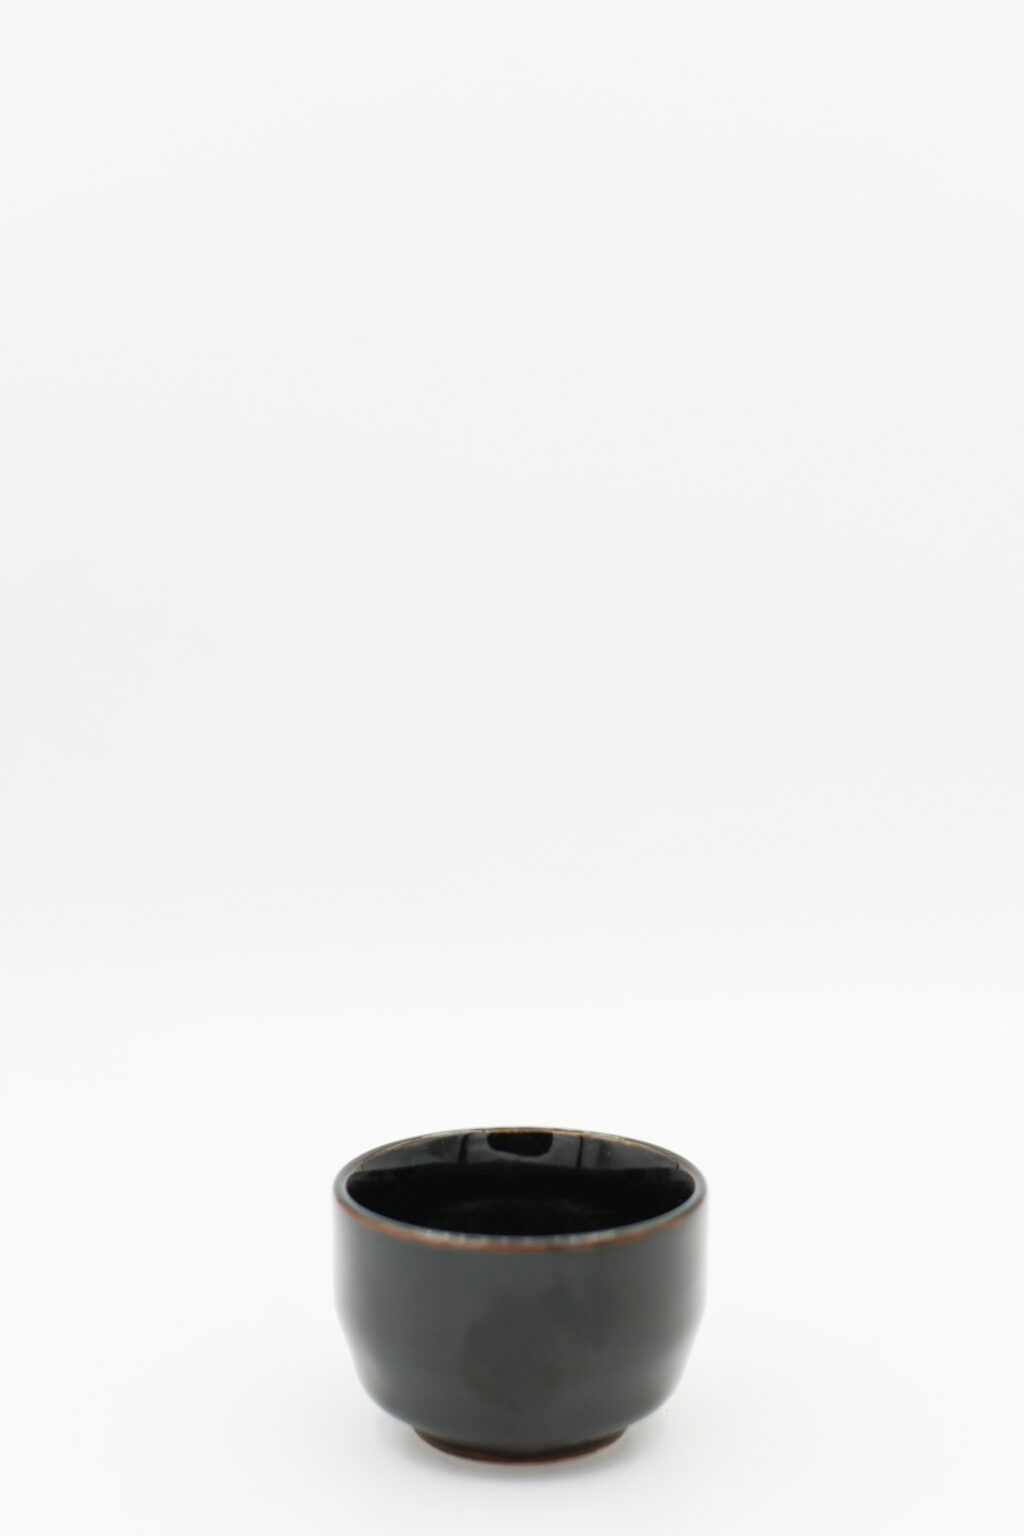 Black Ceramic Sake Cup 2 oz (Tenmoku)